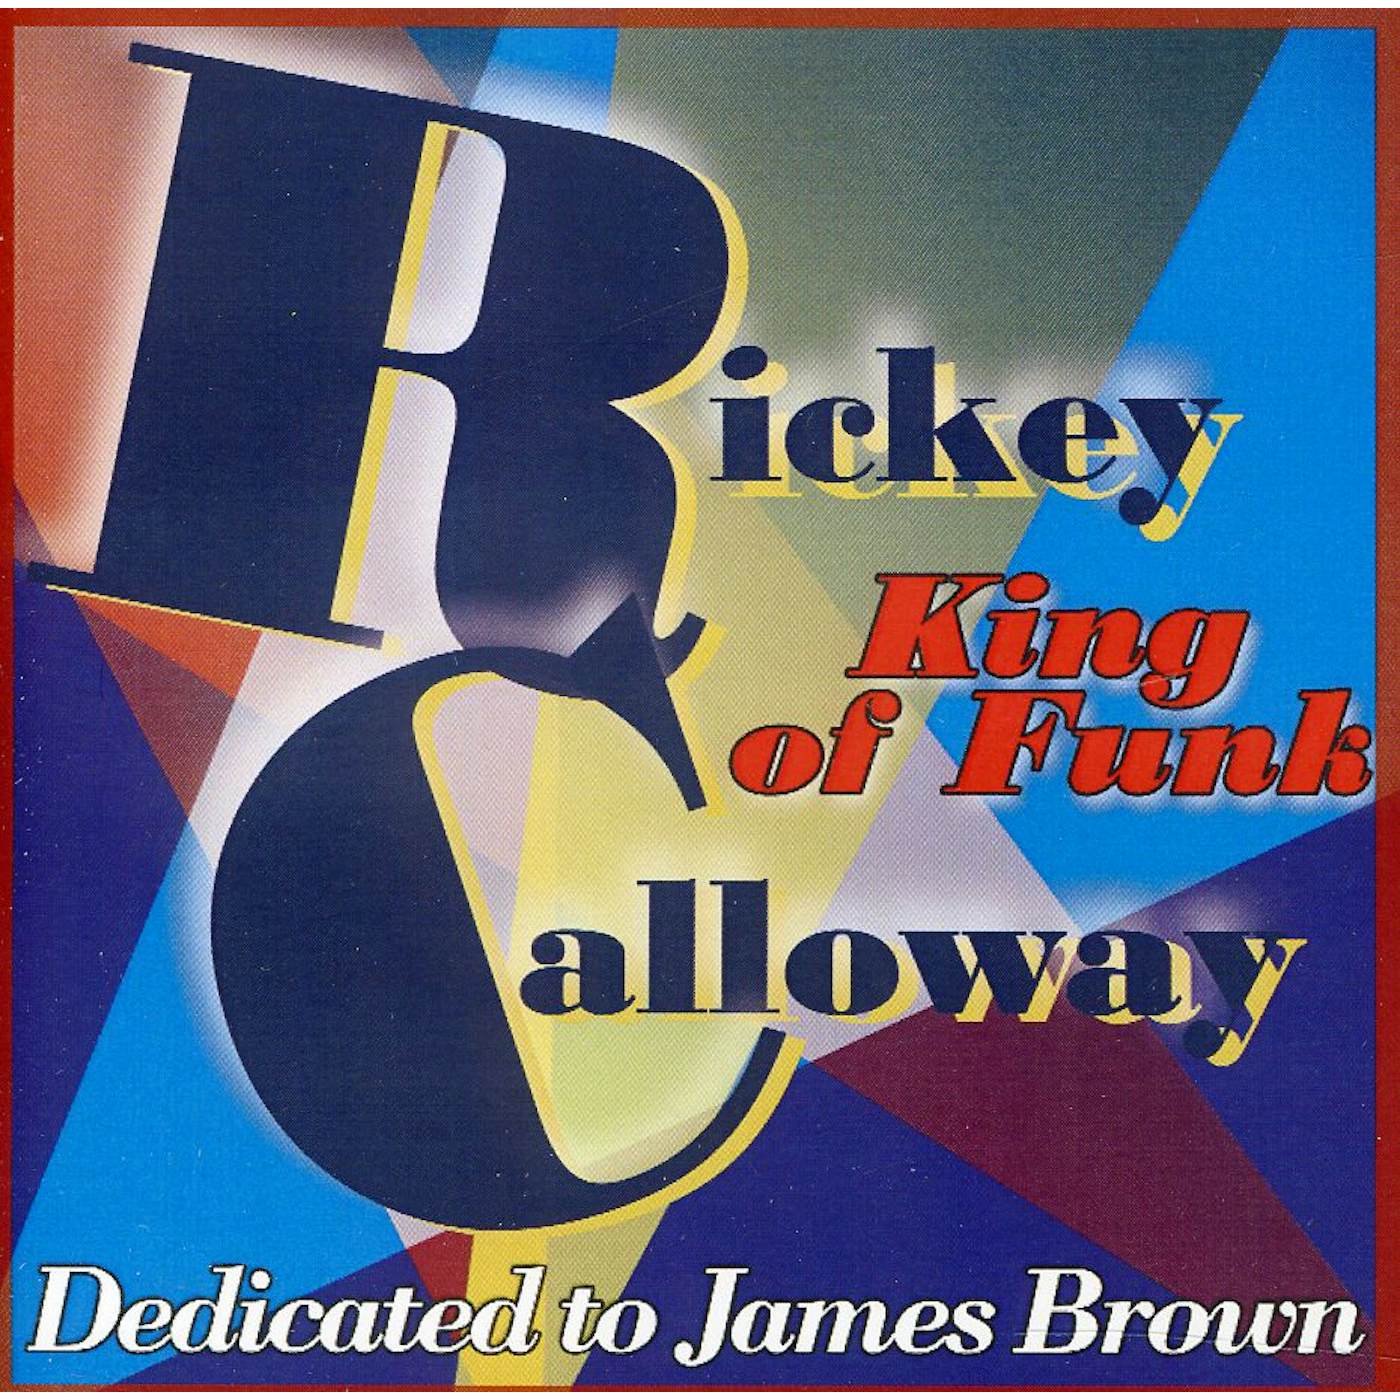 Rickey Calloway KING OF FUNK CD